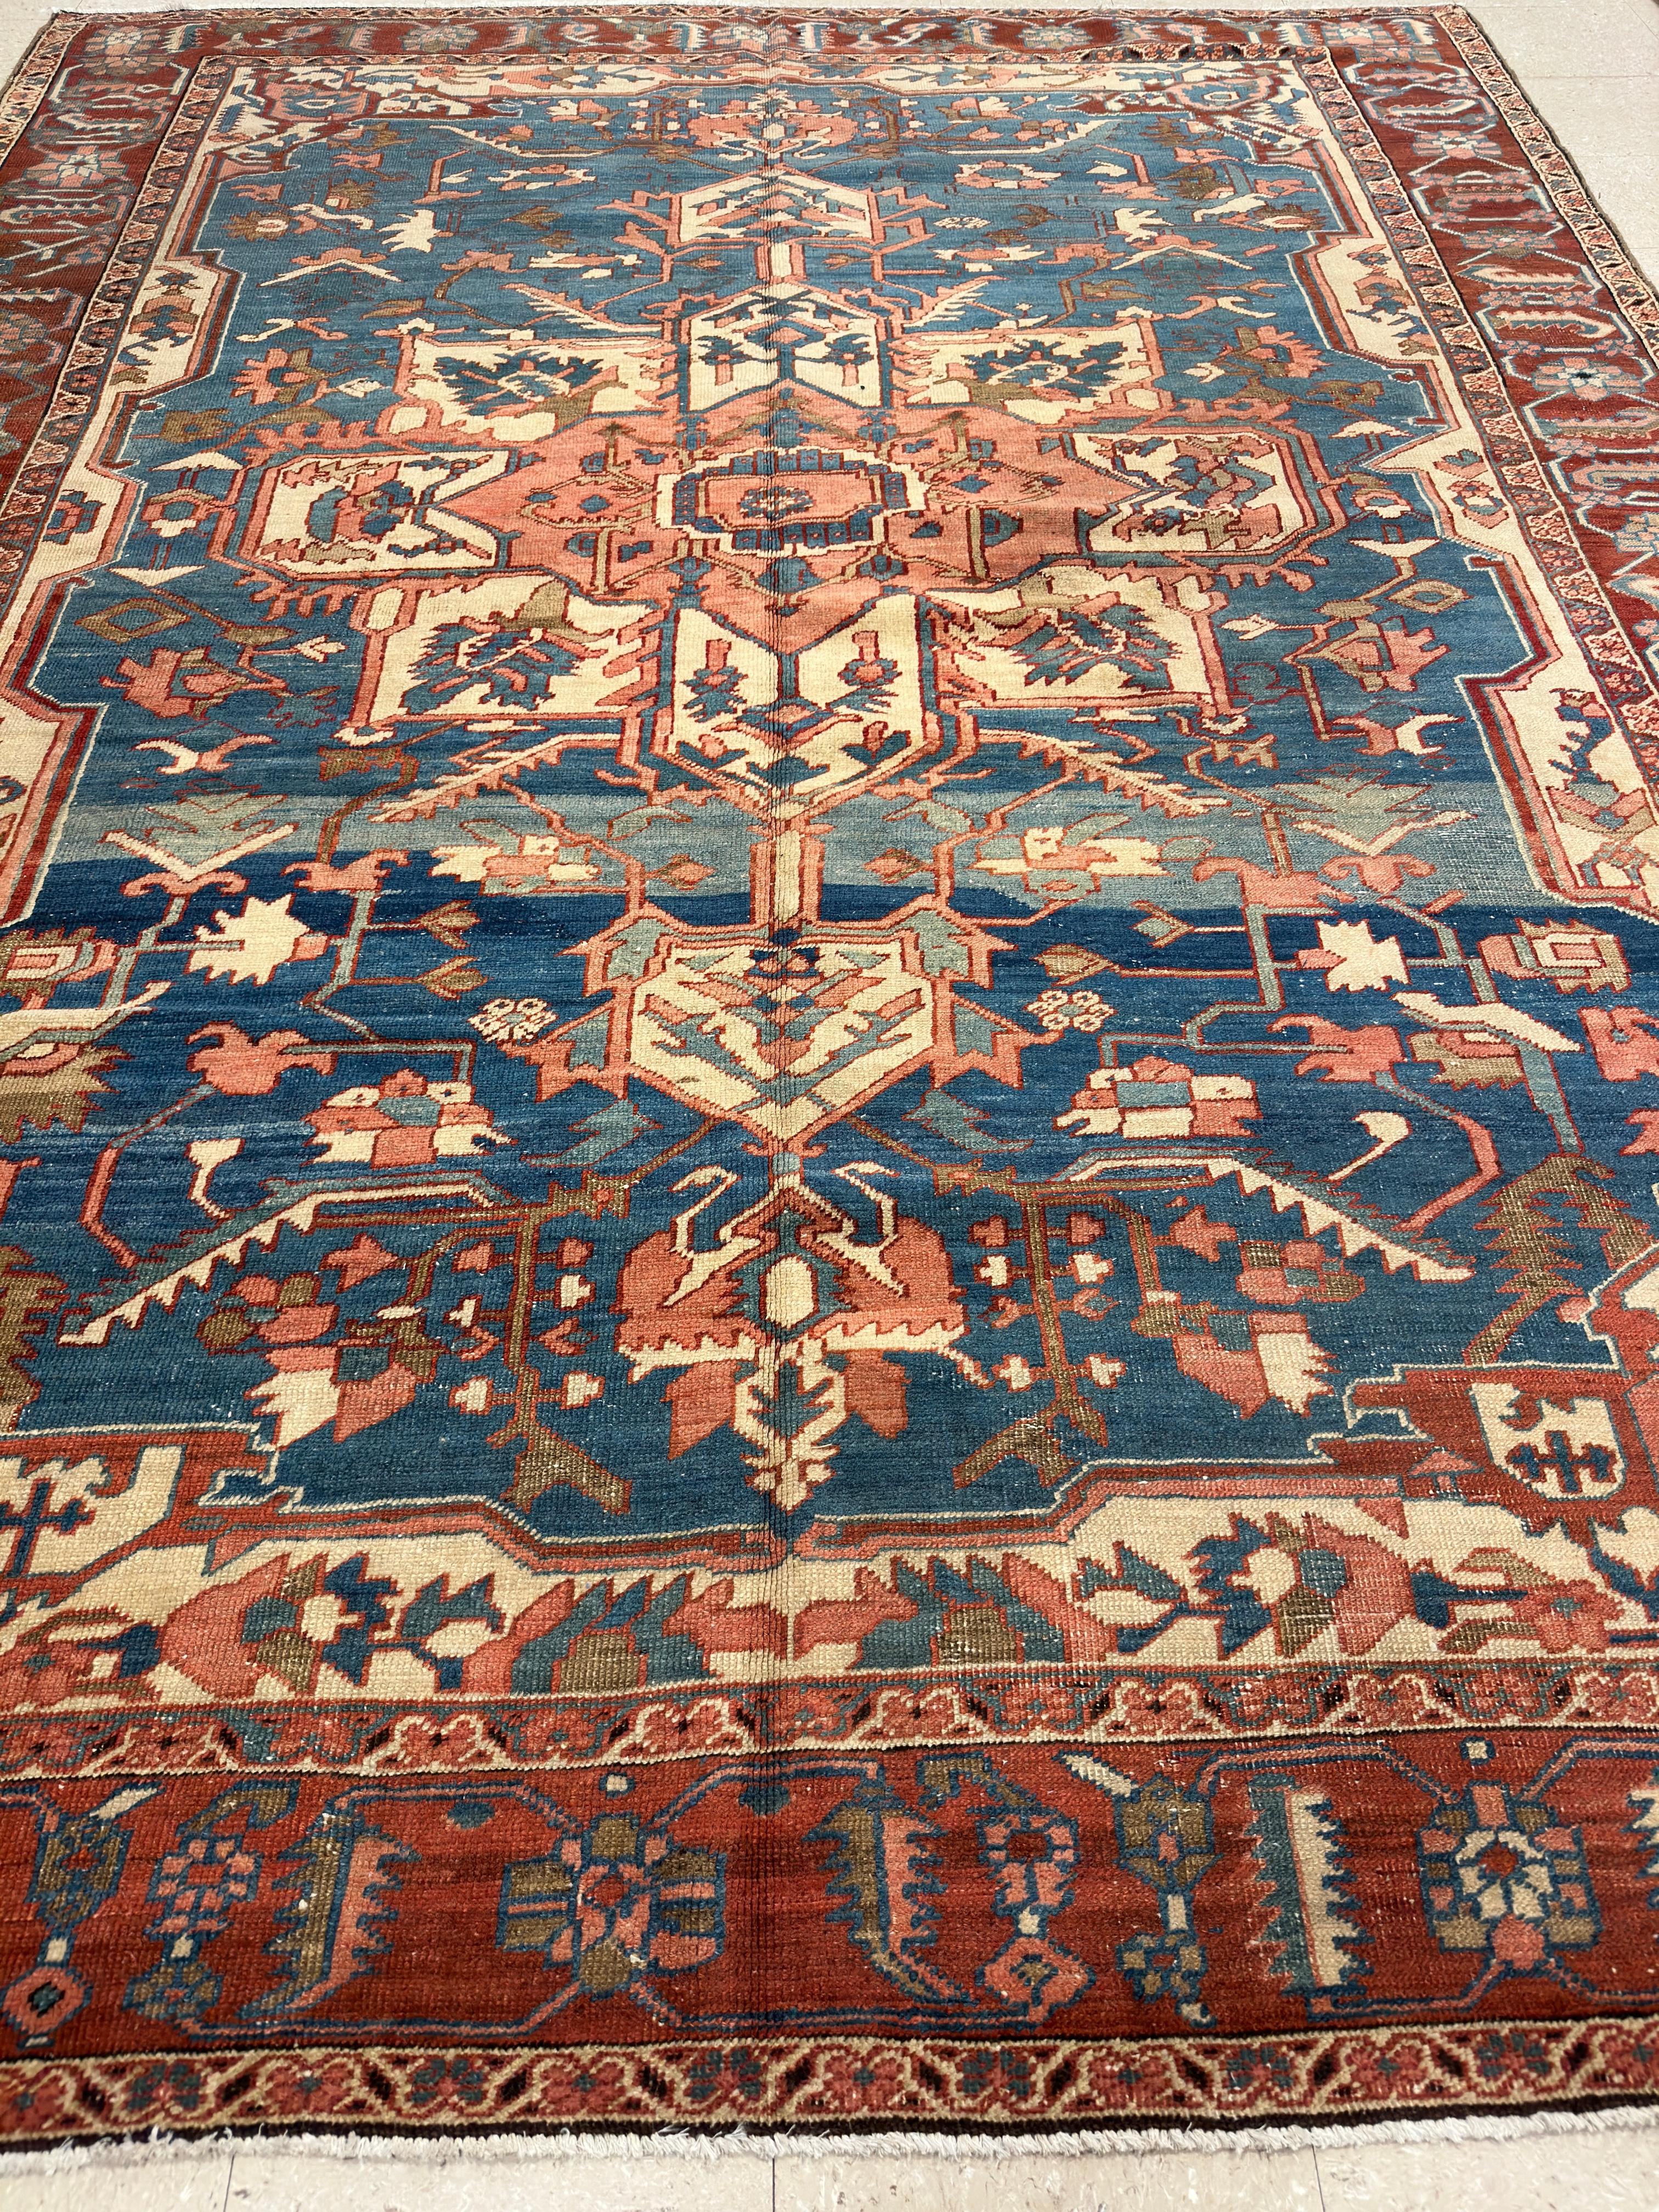 Antique Persian Serapi Carpet, Handmade Rug Light Blue, Ivory, Rusty Red For Sale 7